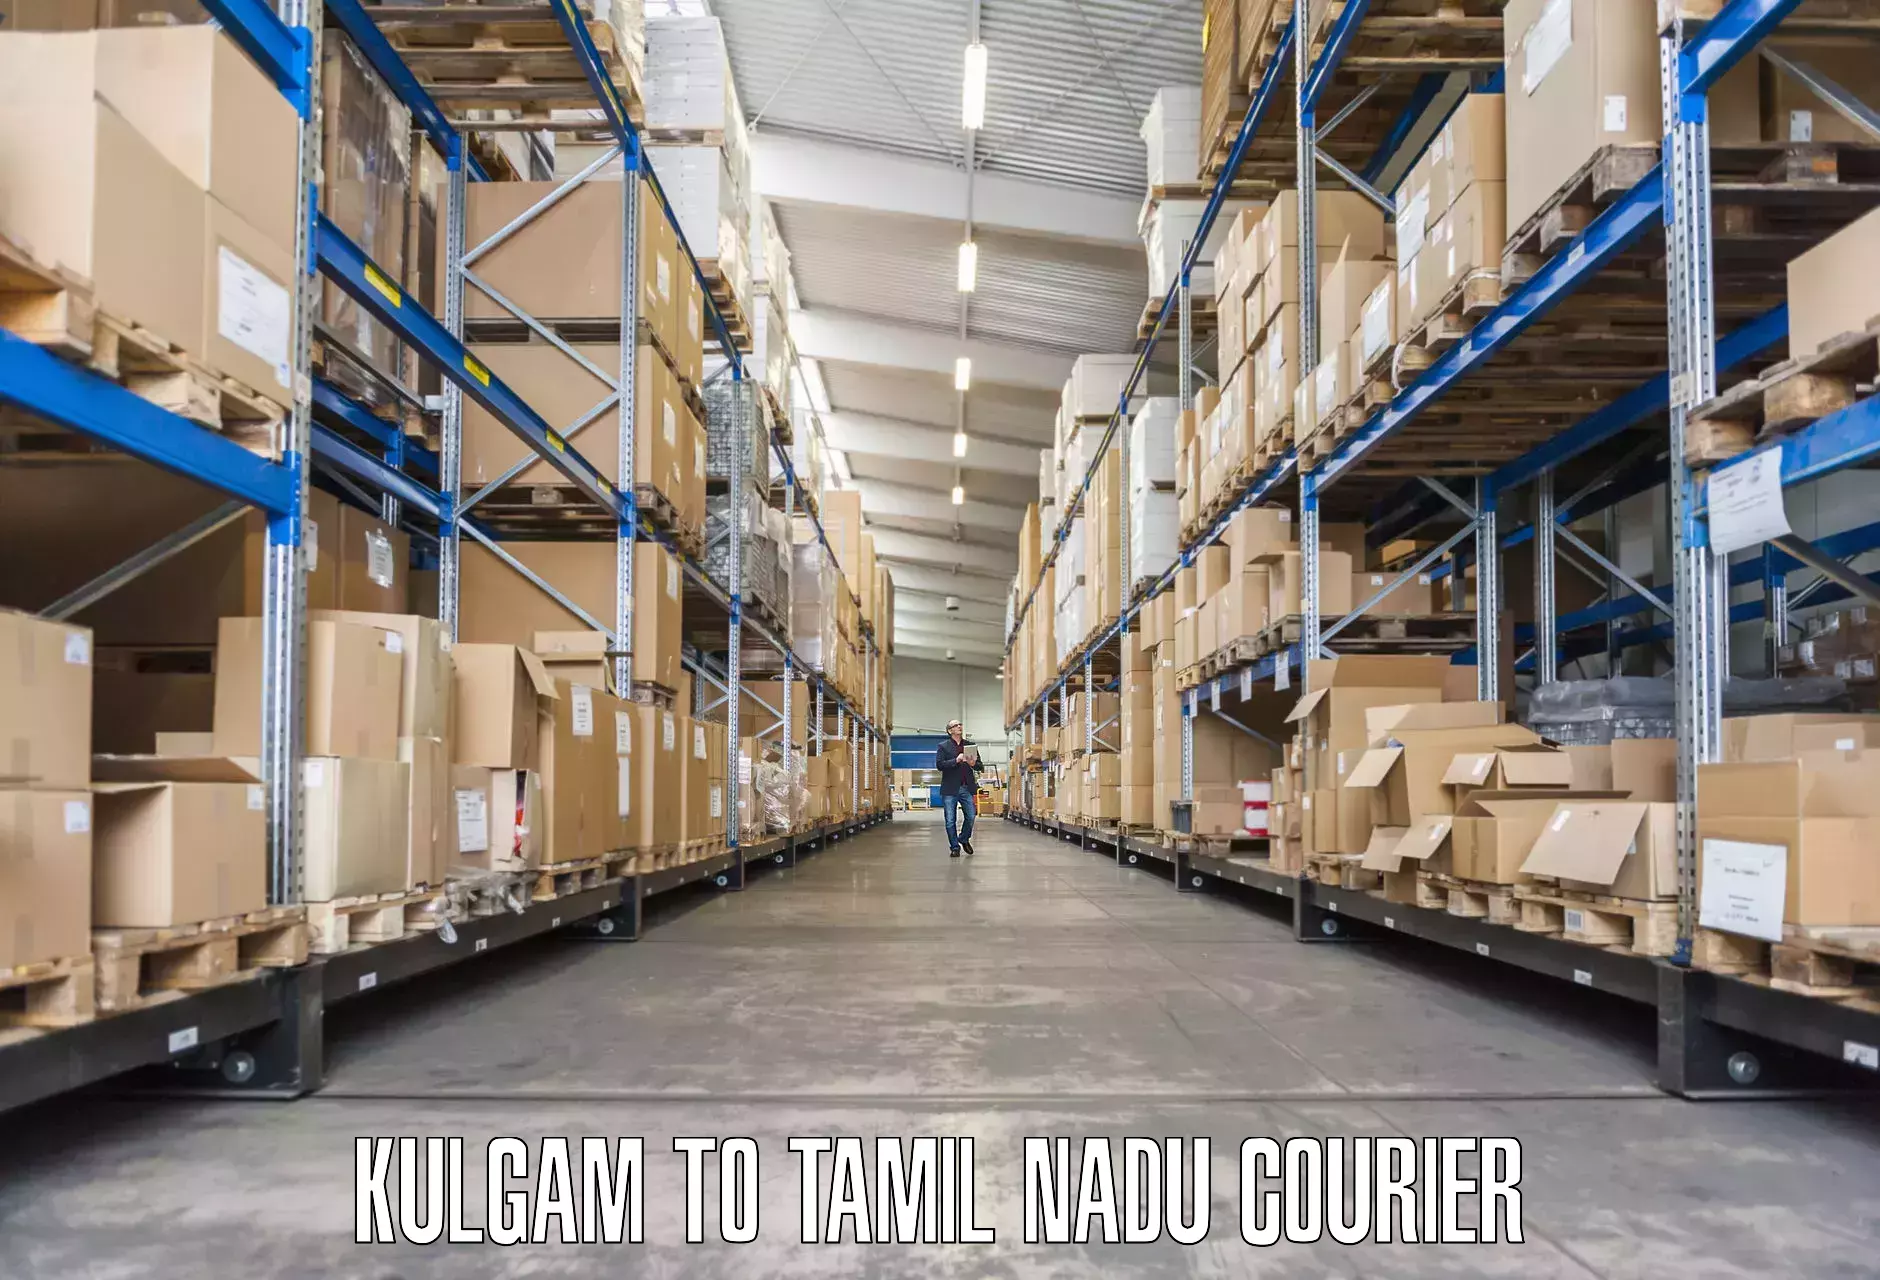 Furniture moving experts Kulgam to Tiruchirappalli